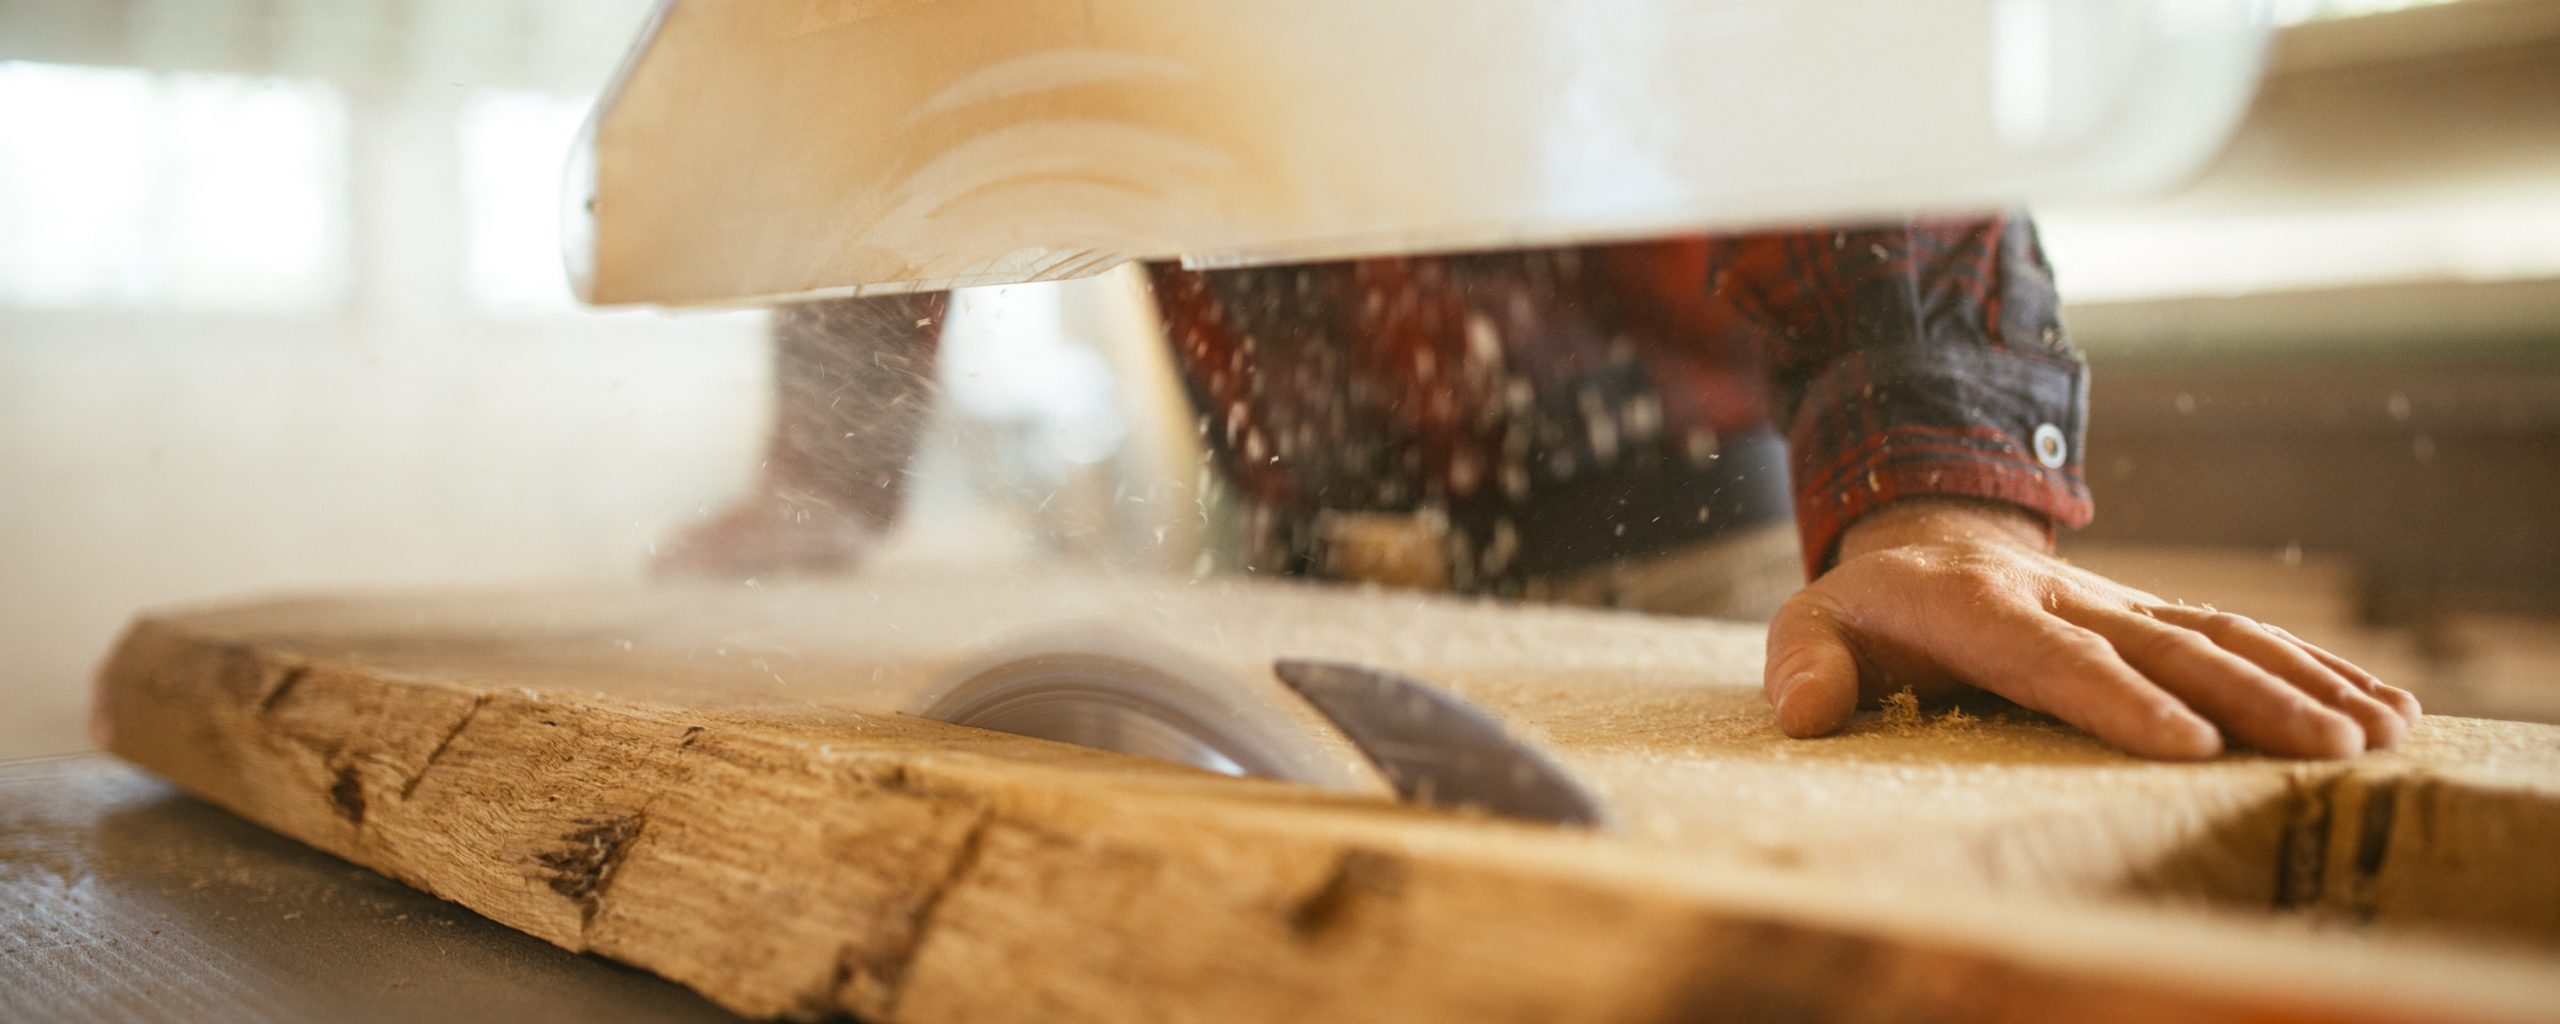 Ein langes, flaches Holzstück wird mit einer Kreissäge bearbeitet. Ein Mann, von dem nur die Hände und ein kariertes Hemd zu sehen sind, hält das Holz fest.